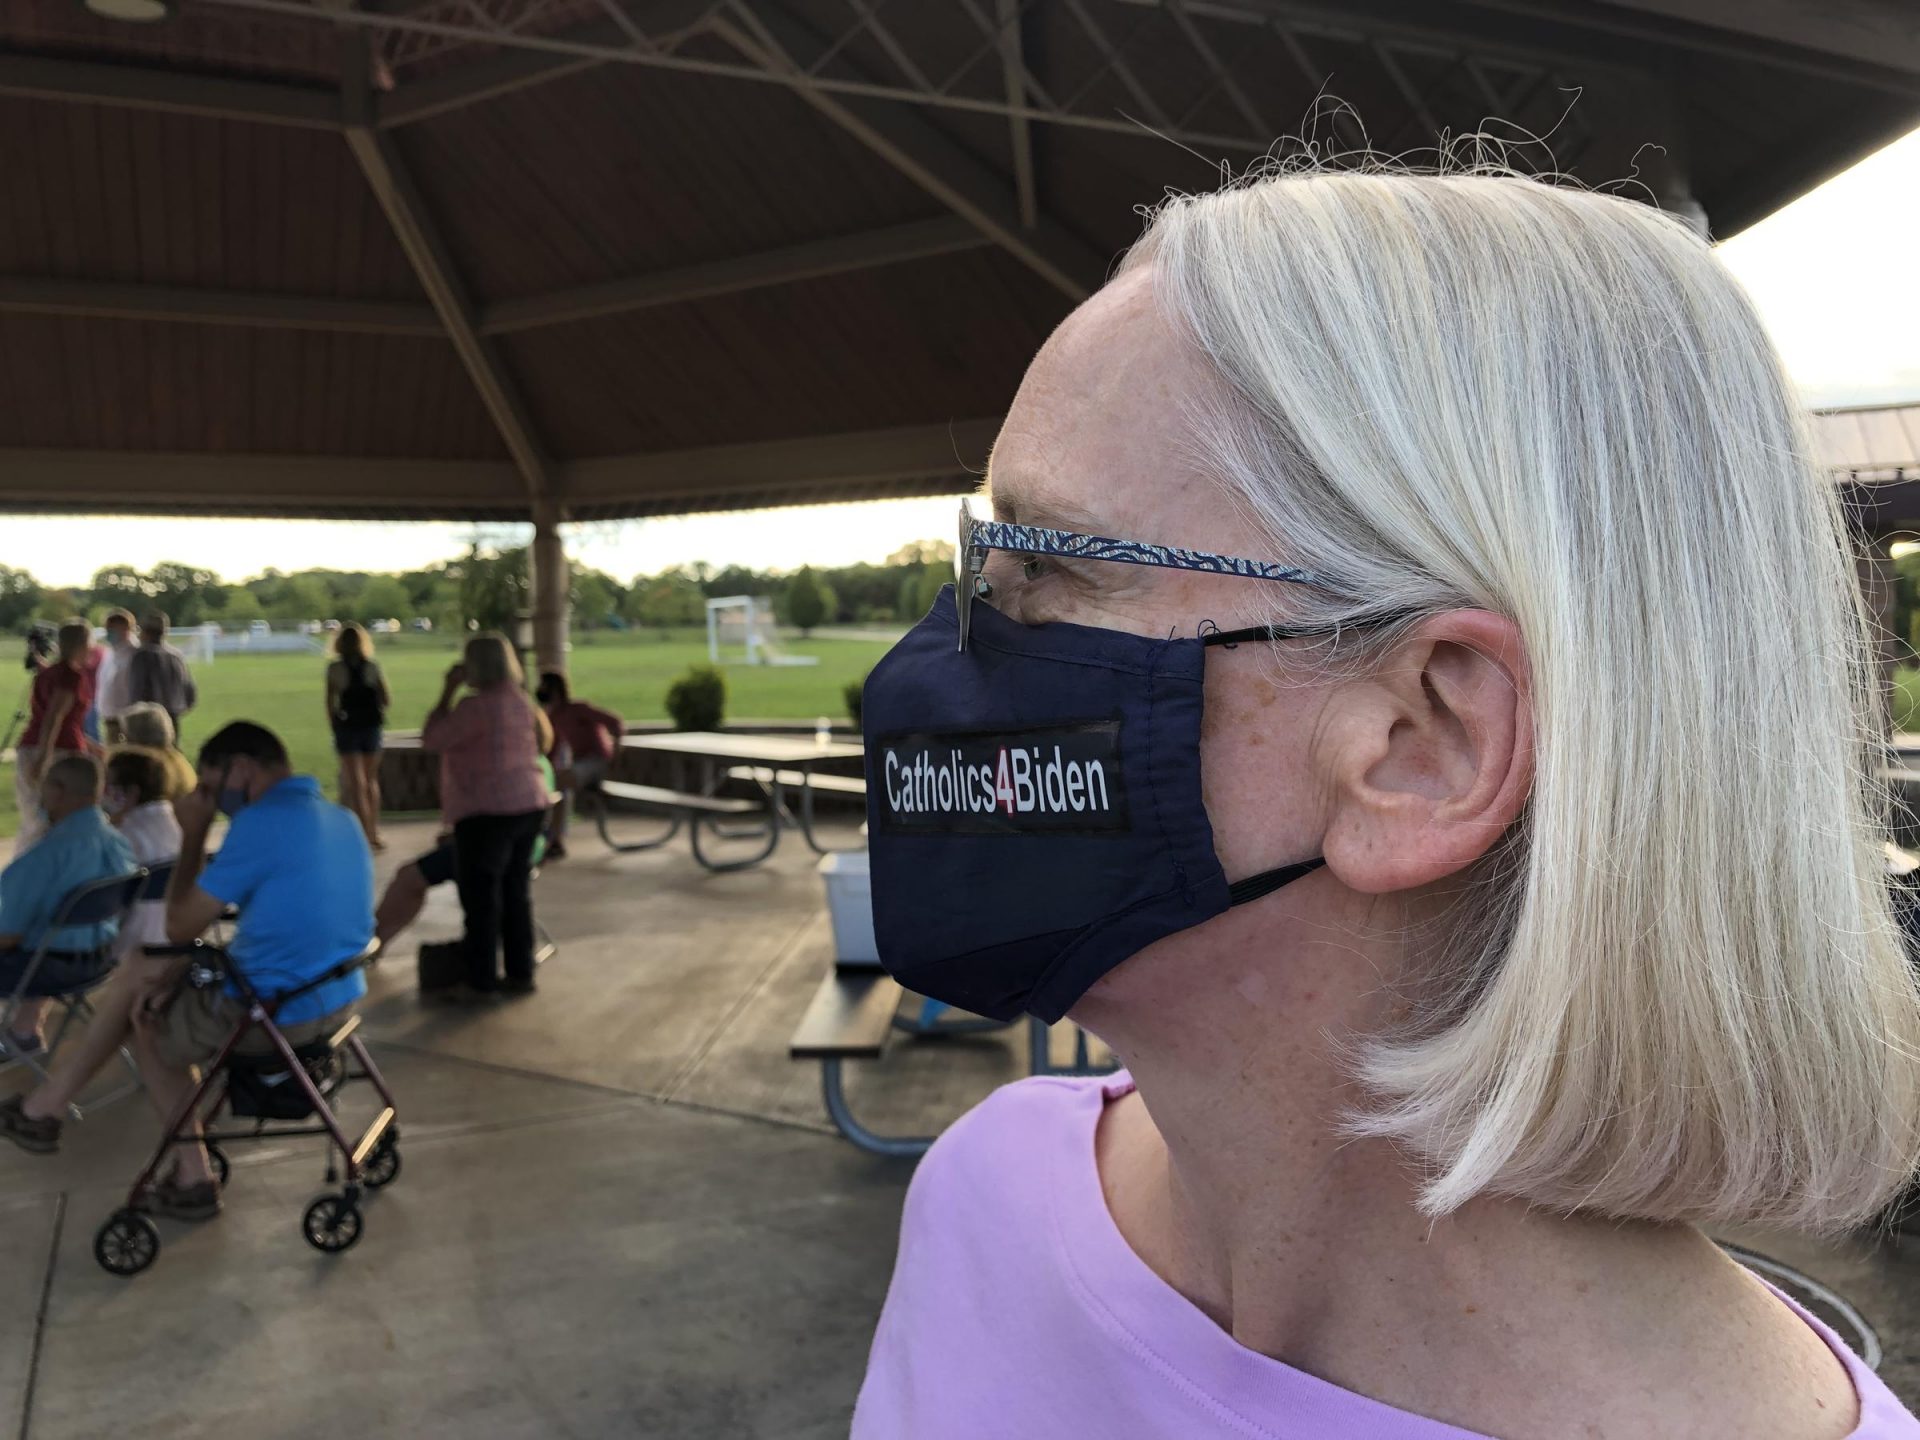 Independent voter Betsy Cwenar wears a Catholics4Biden face mask.